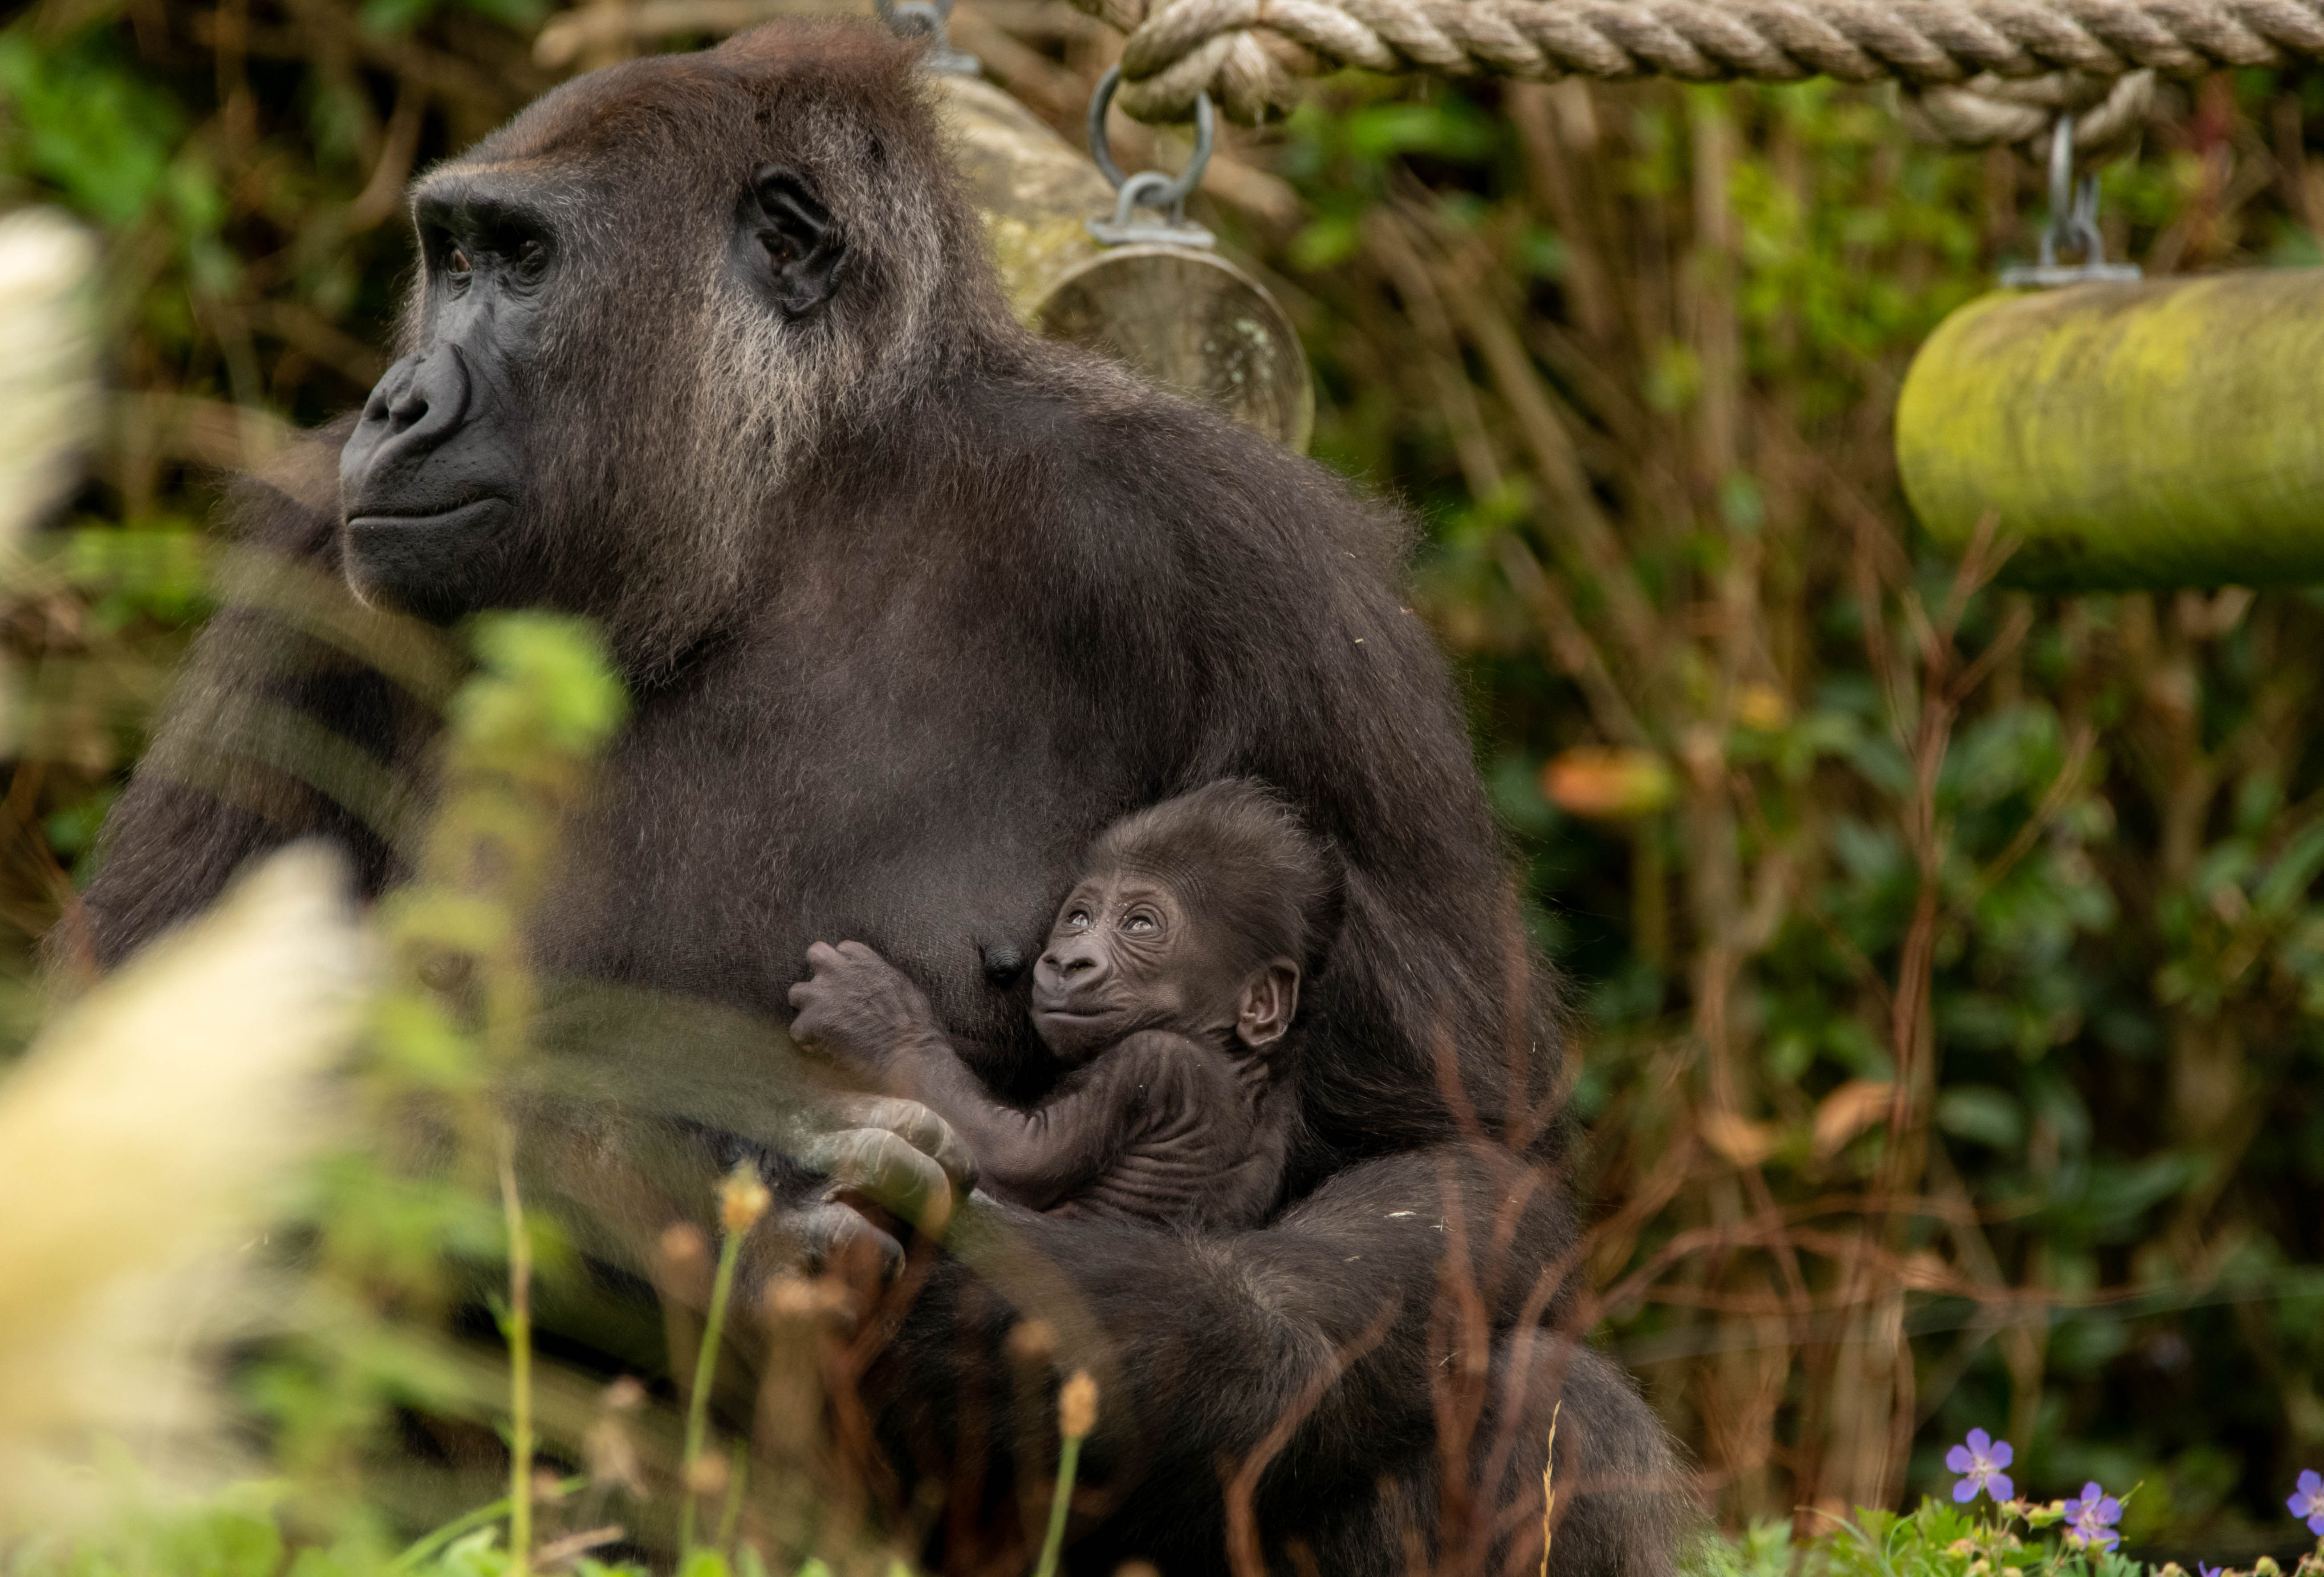 Baby gorilla thriving at Bristol Zoo Gardens